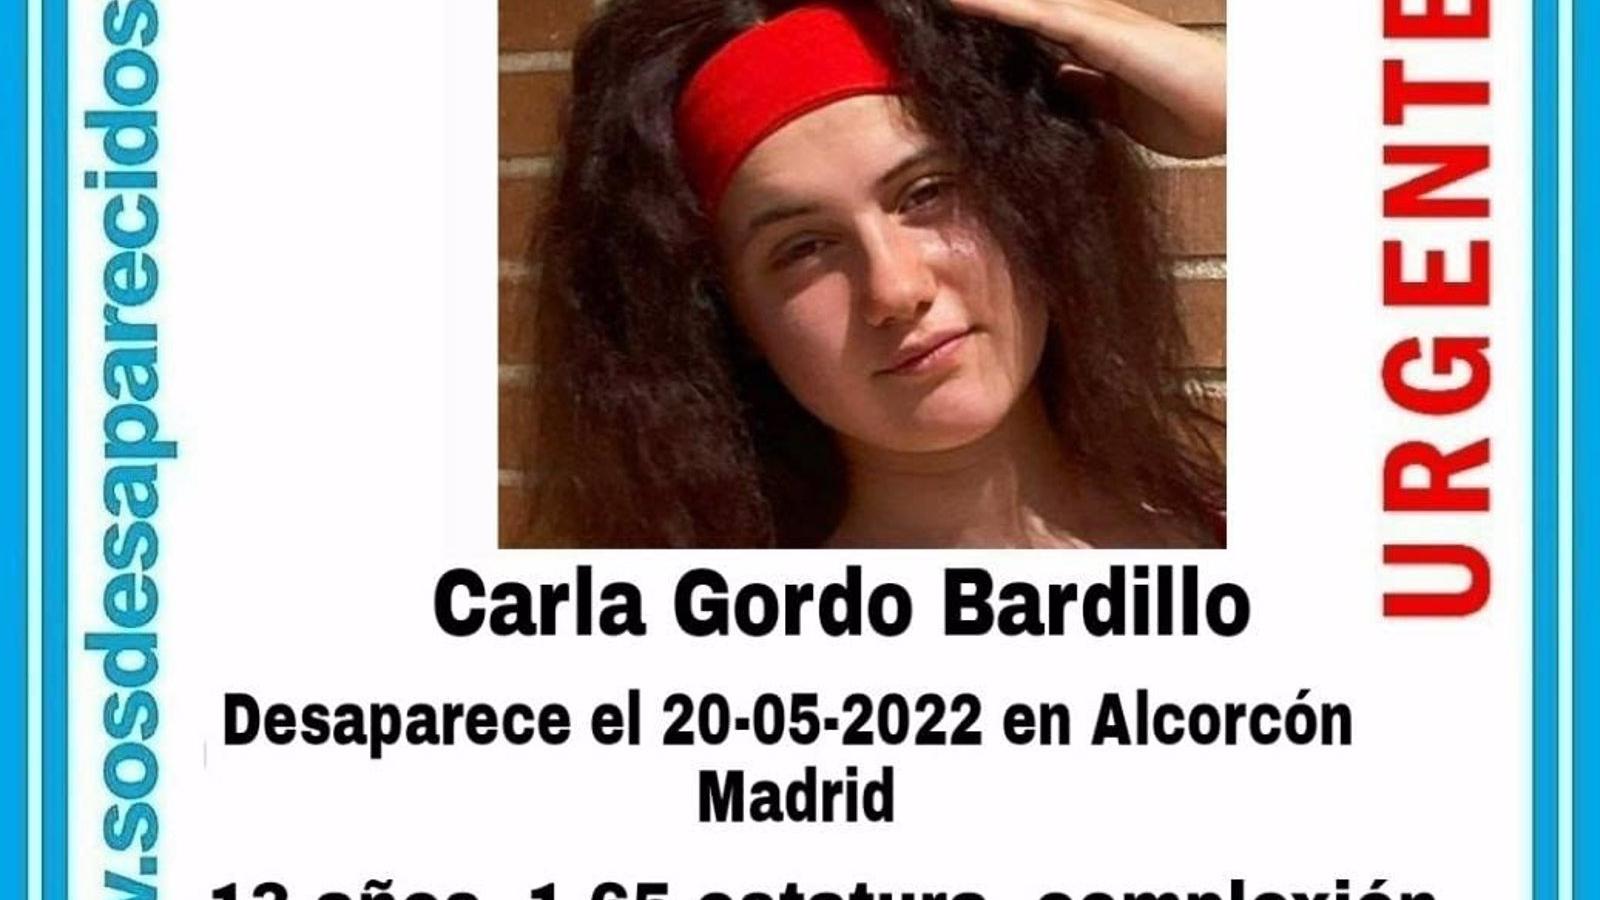 Desaparece una chica de 13 años en Alcorcón